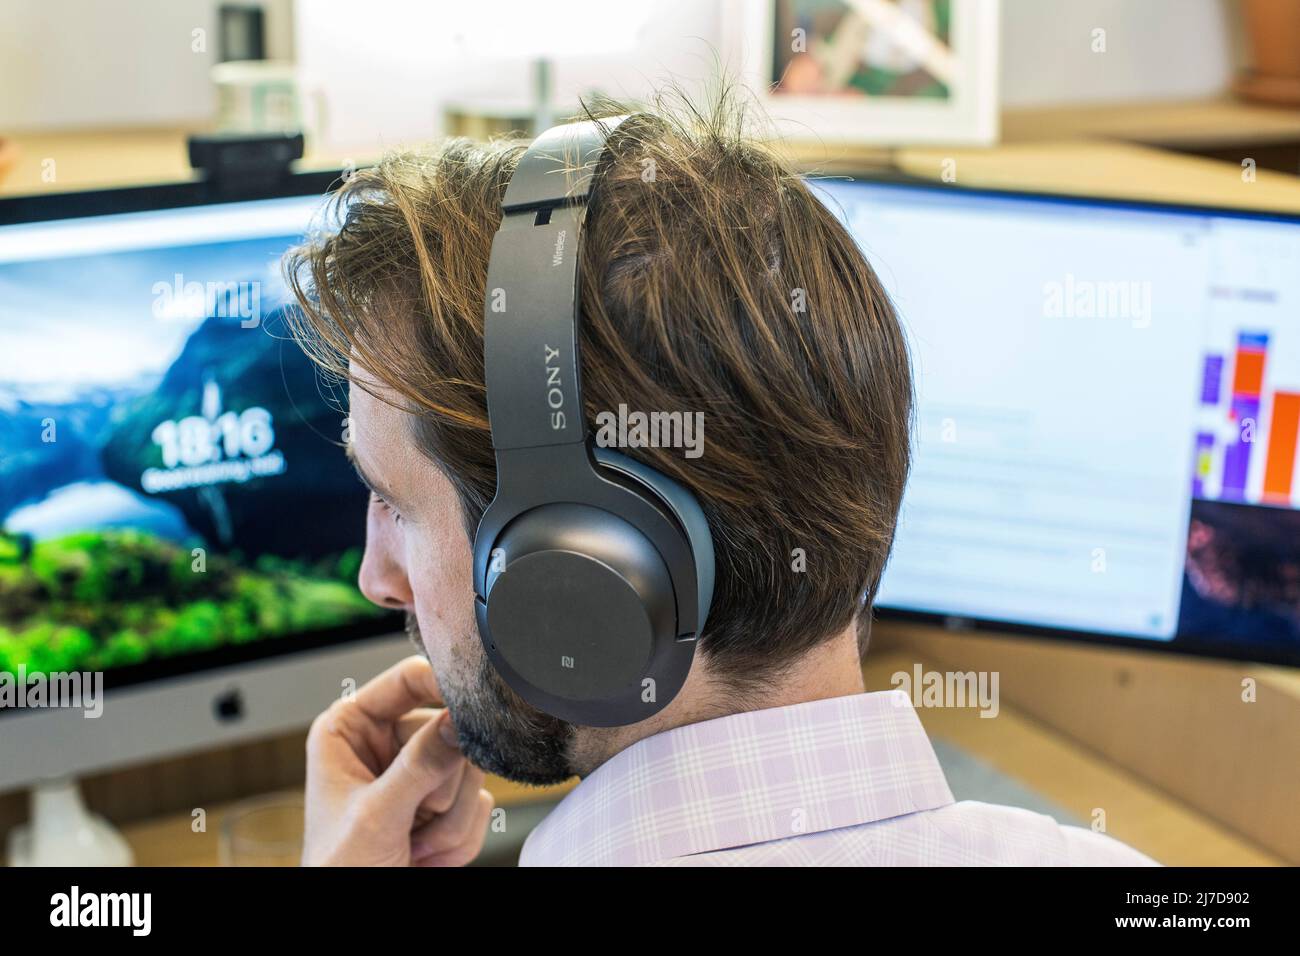 Homme attentif avec casque utilisant un ordinateur dans un bureau Banque D'Images